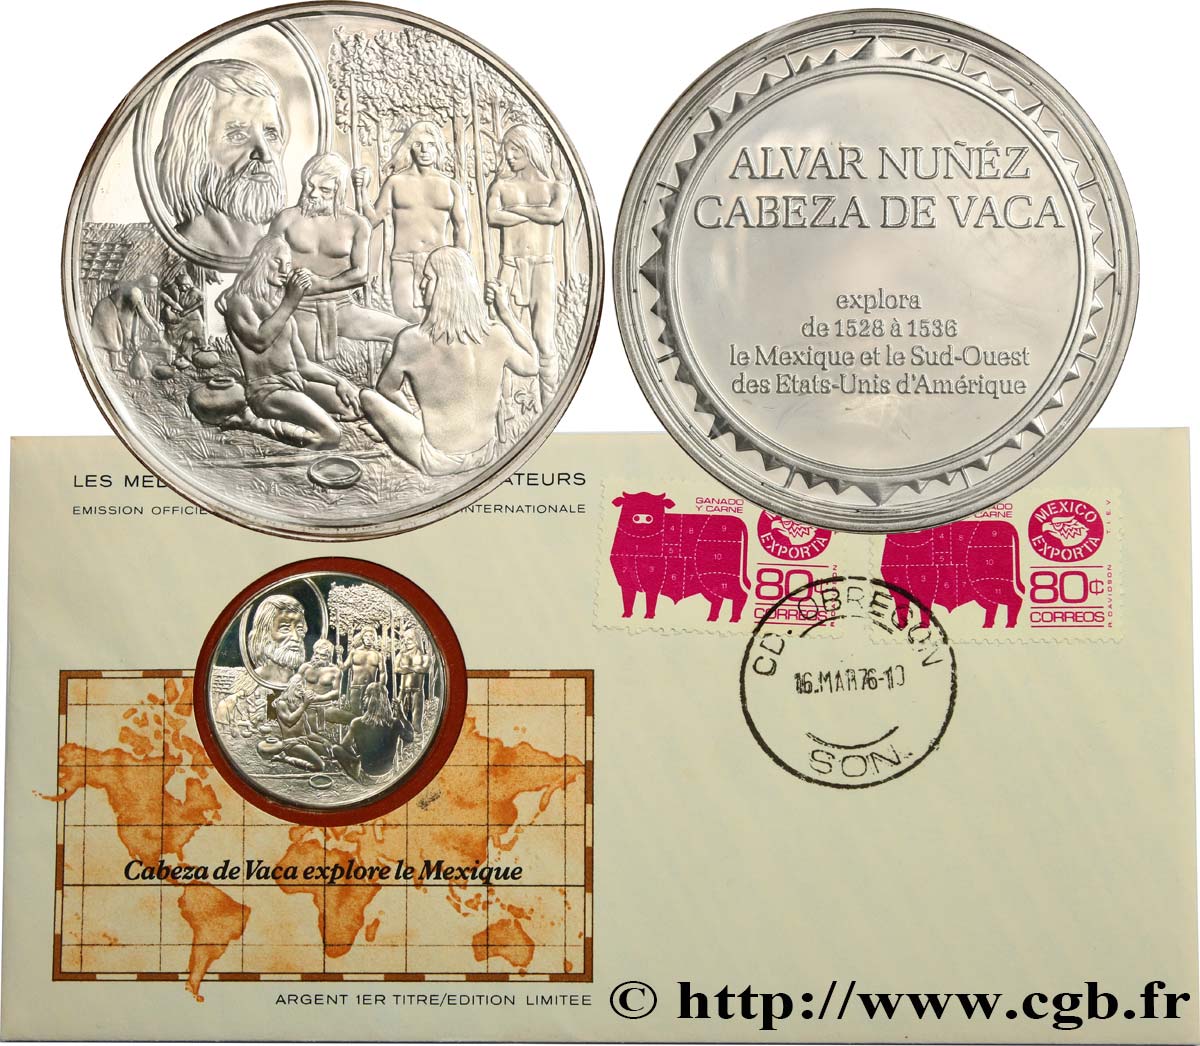 THE GREAT EXPLORERS  MEDALS Enveloppe “Timbre médaille”, Cabeza de Vaca explore le Mexique fST